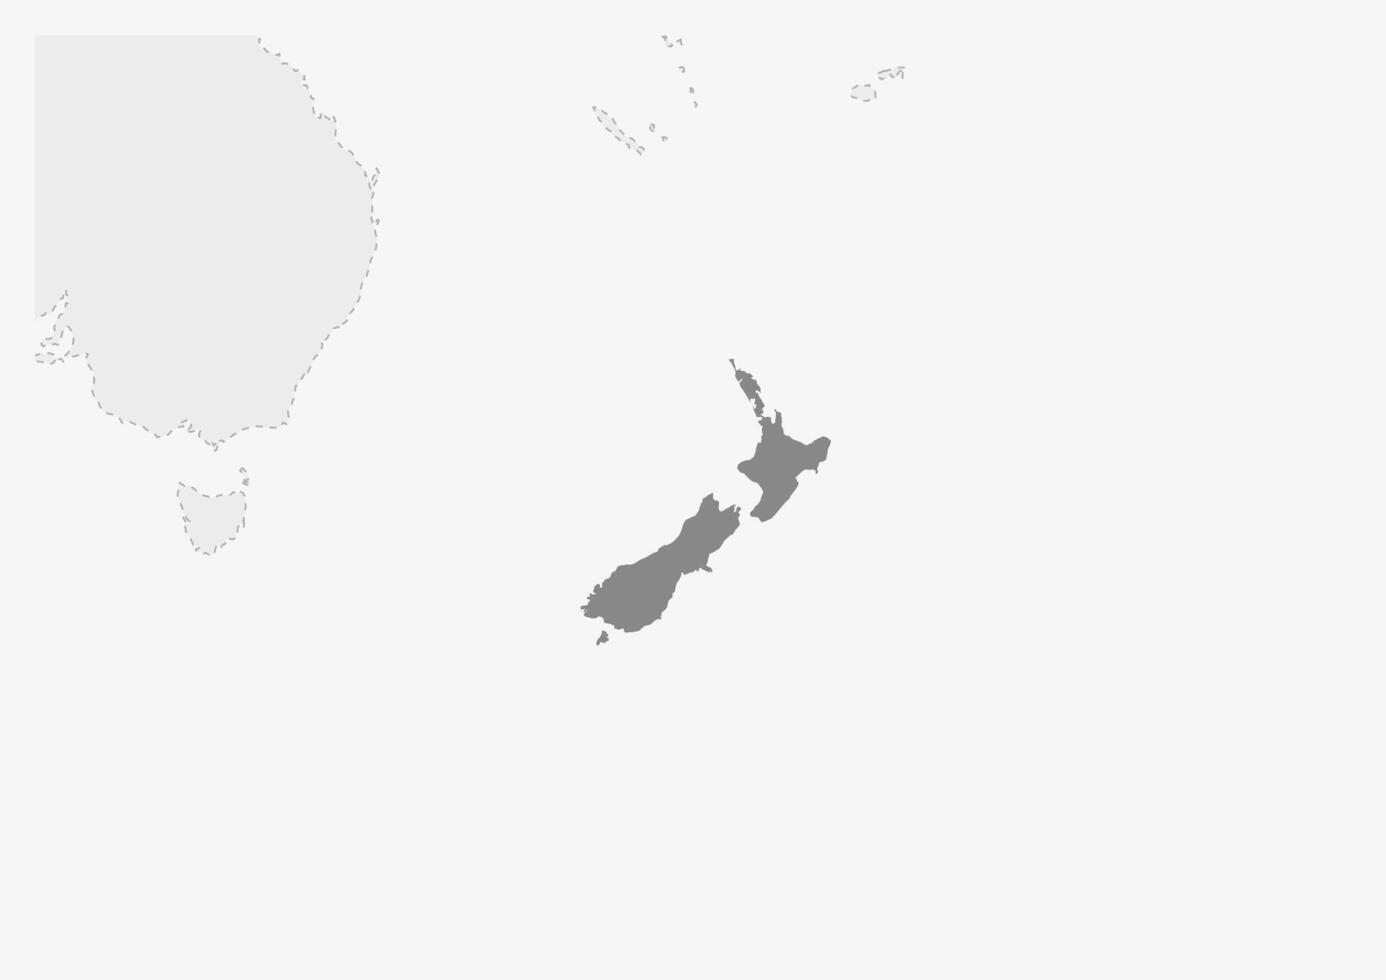 Karte von Ozeanien mit hervorgehoben Neu Neuseeland Karte vektor